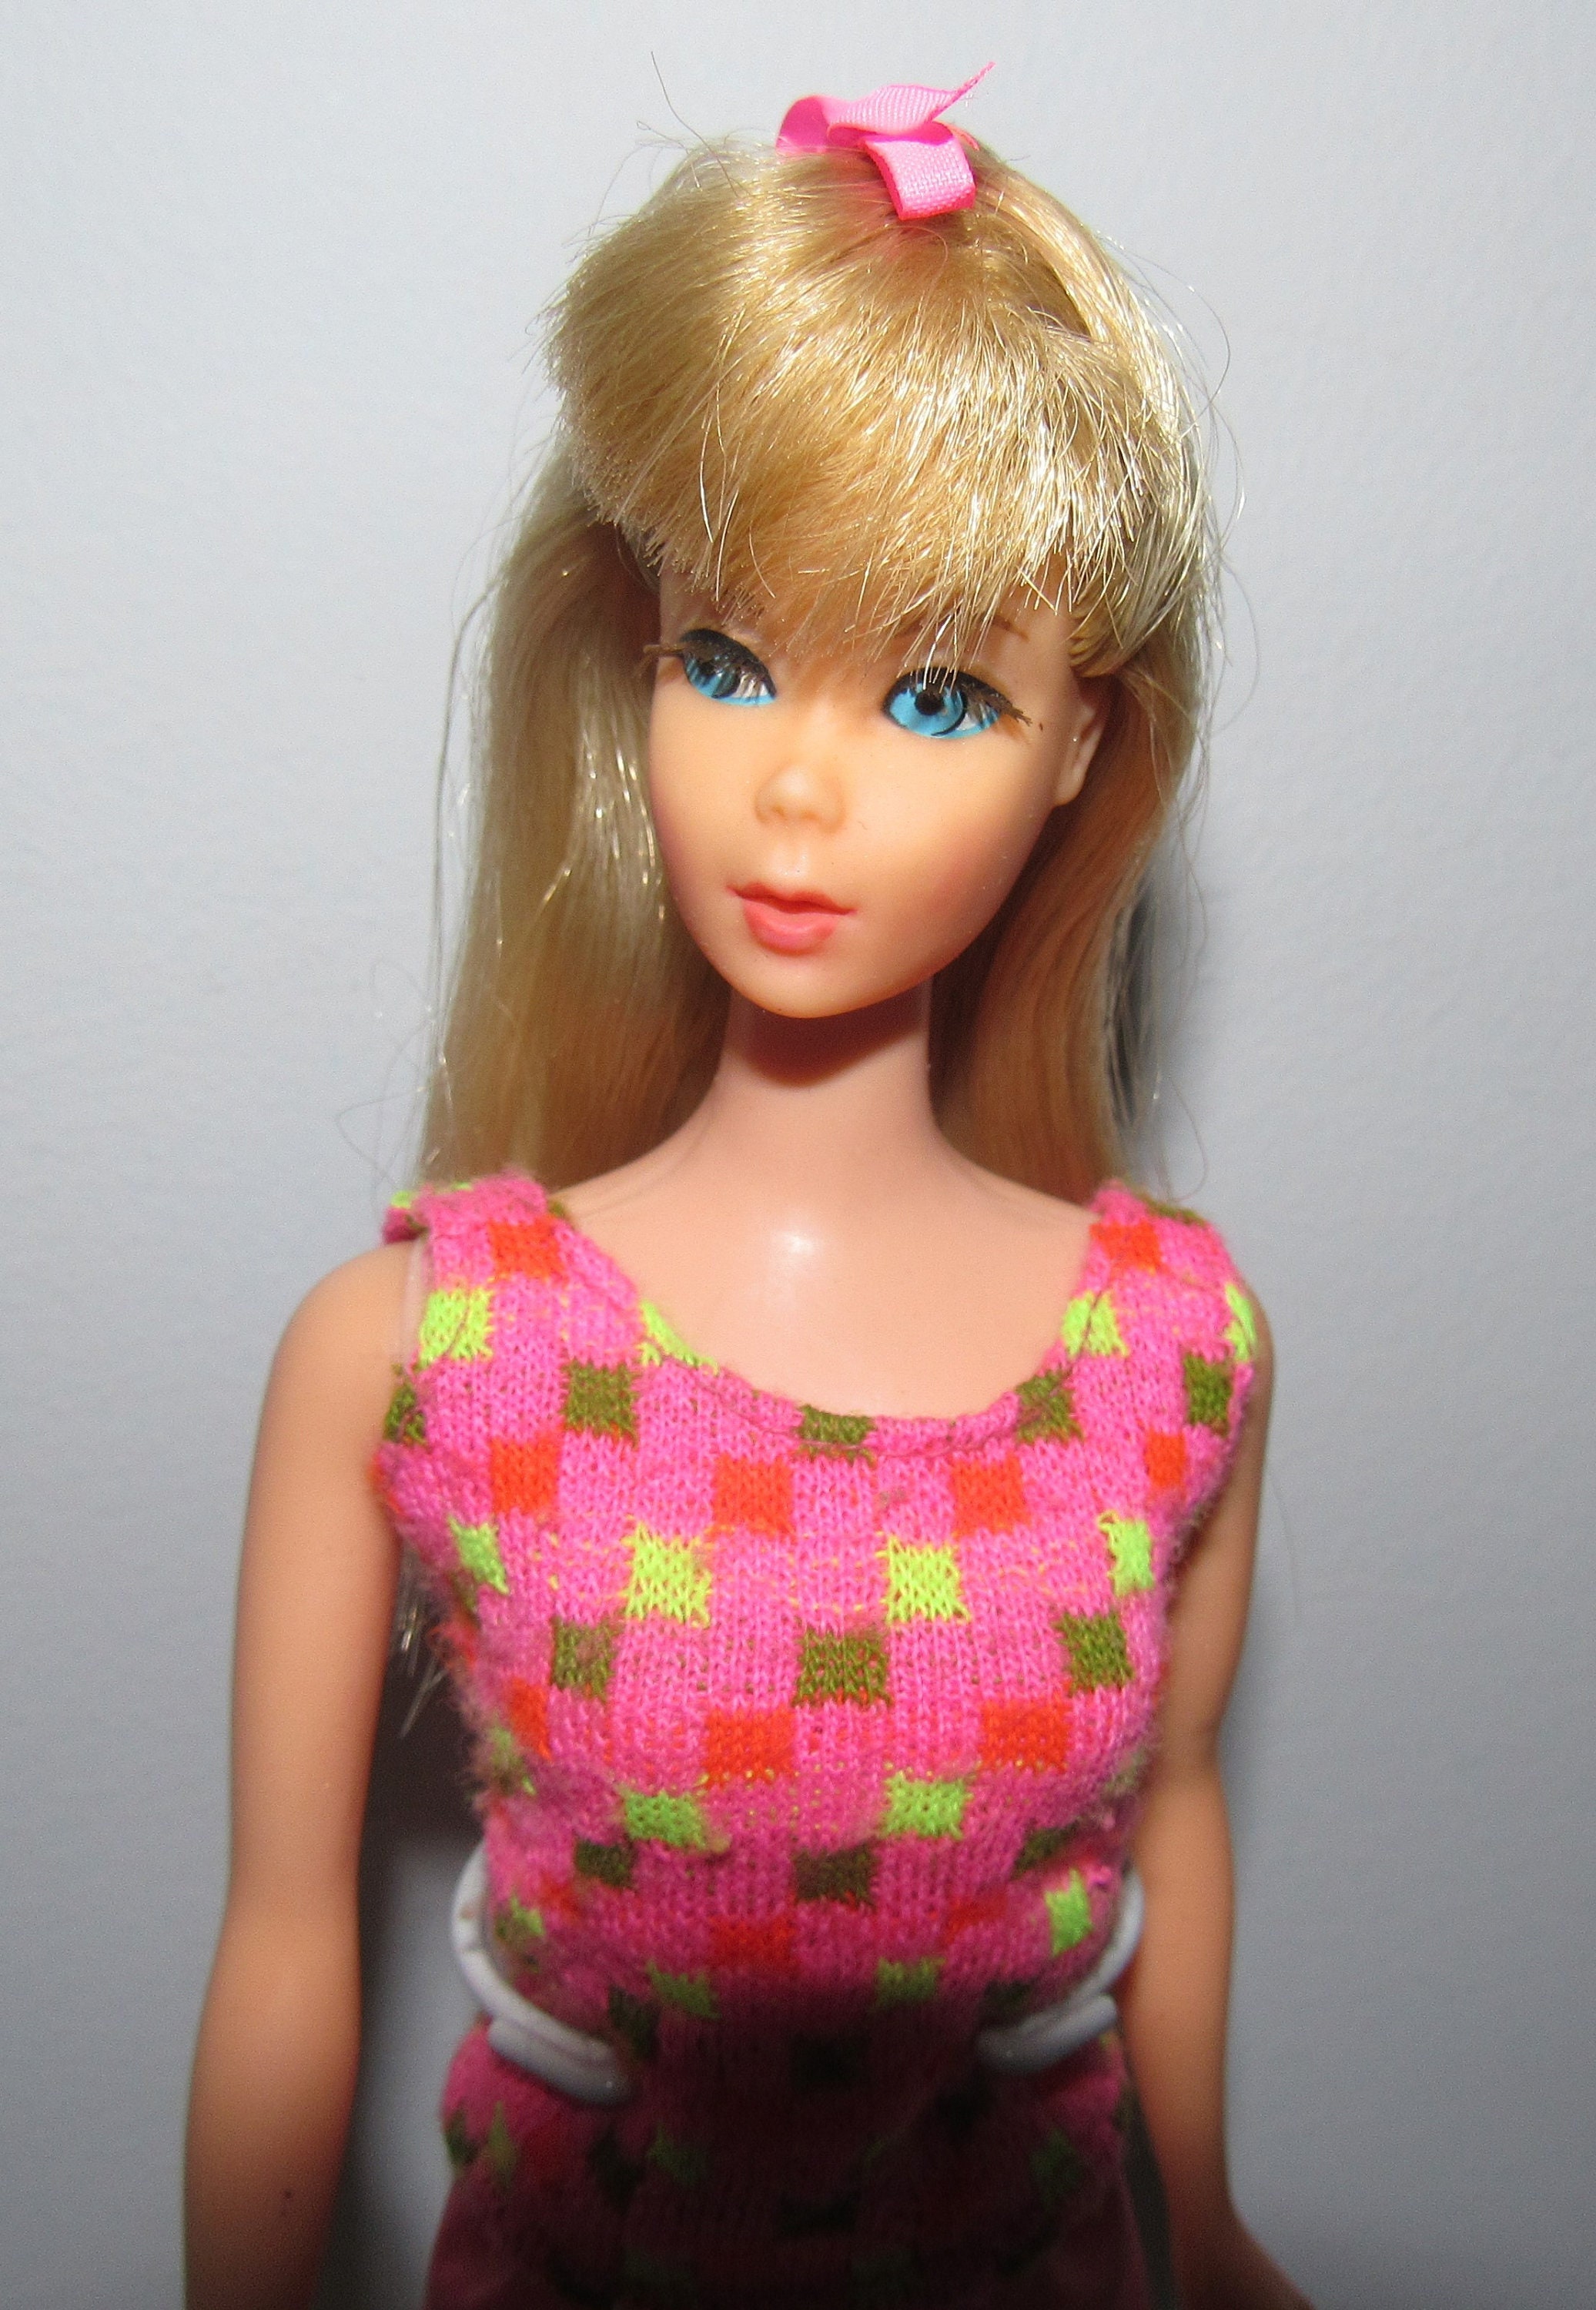 Barbie Skipper Growing up Doll Vintage 1974 Mattel #7259 Complete